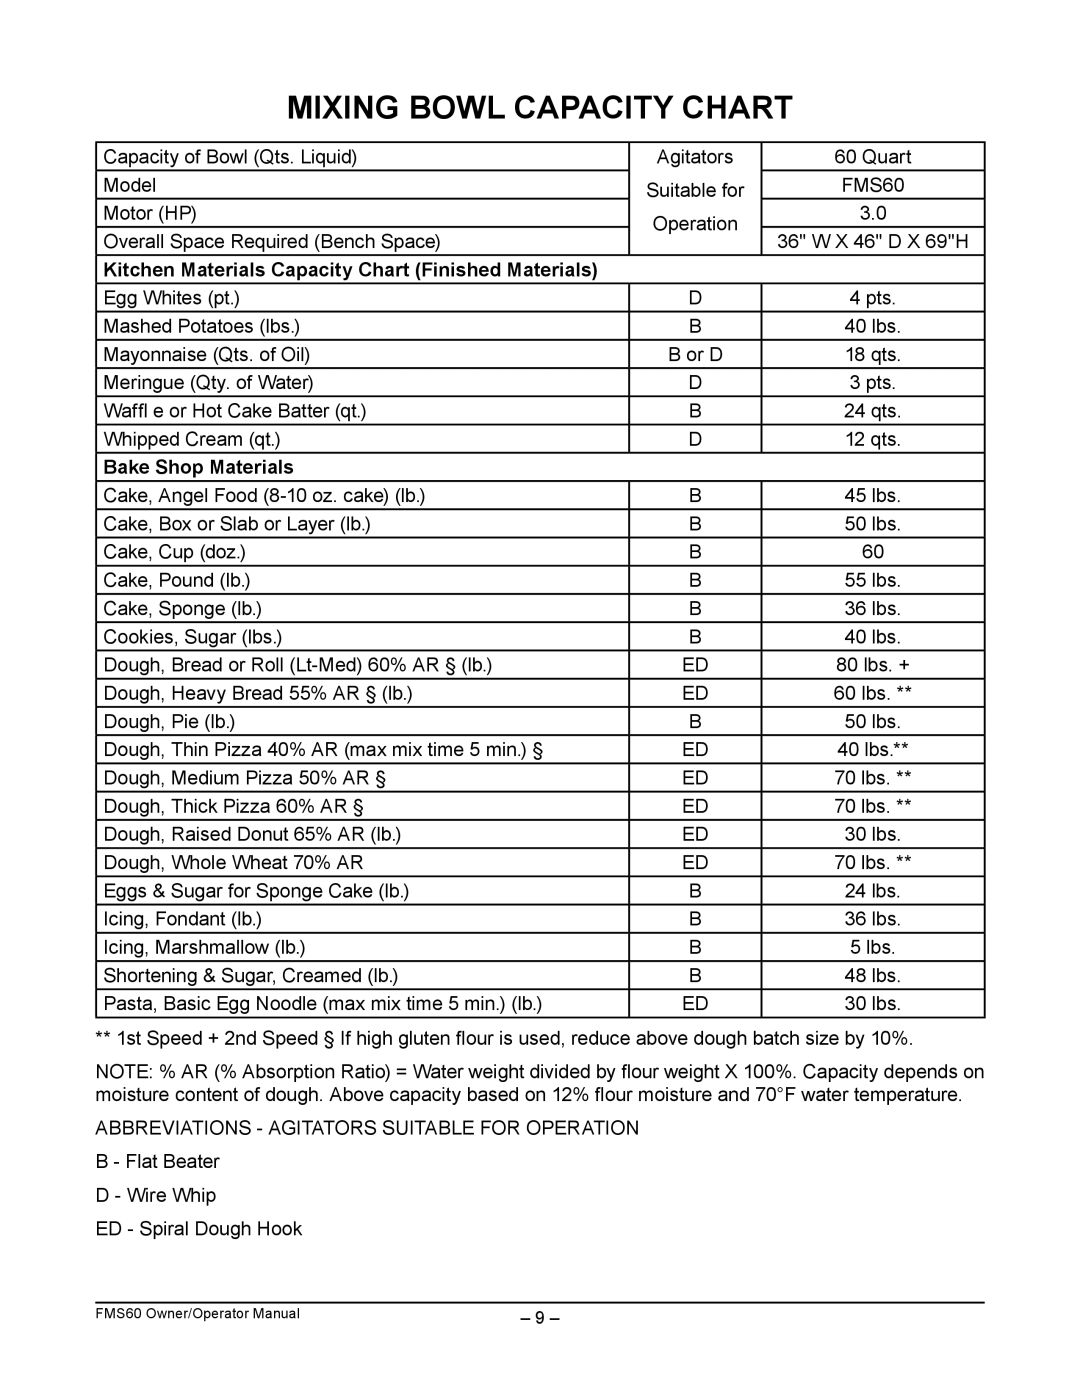 Berkel FMS60 manual Mixing Bowl Capacity Chart, Kitchen Materials Capacity Chart Finished Materials, Bake Shop Materials 